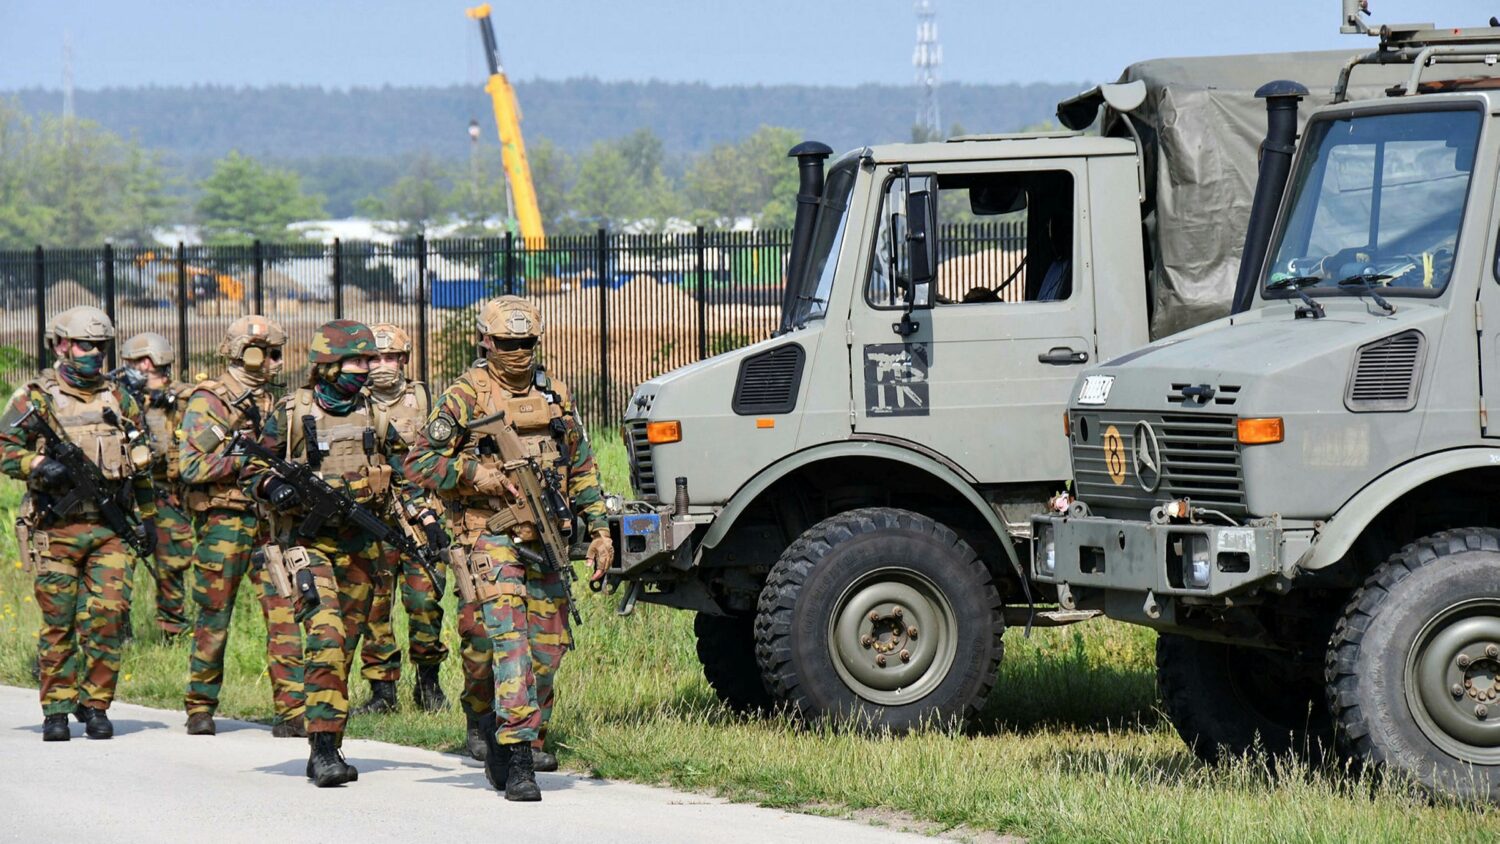 Βέλγιο: Η αστυνομία πραγματοποίησε έρευνες για ύποπτα ακροδεξιά στοιχεία εντός του στρατού